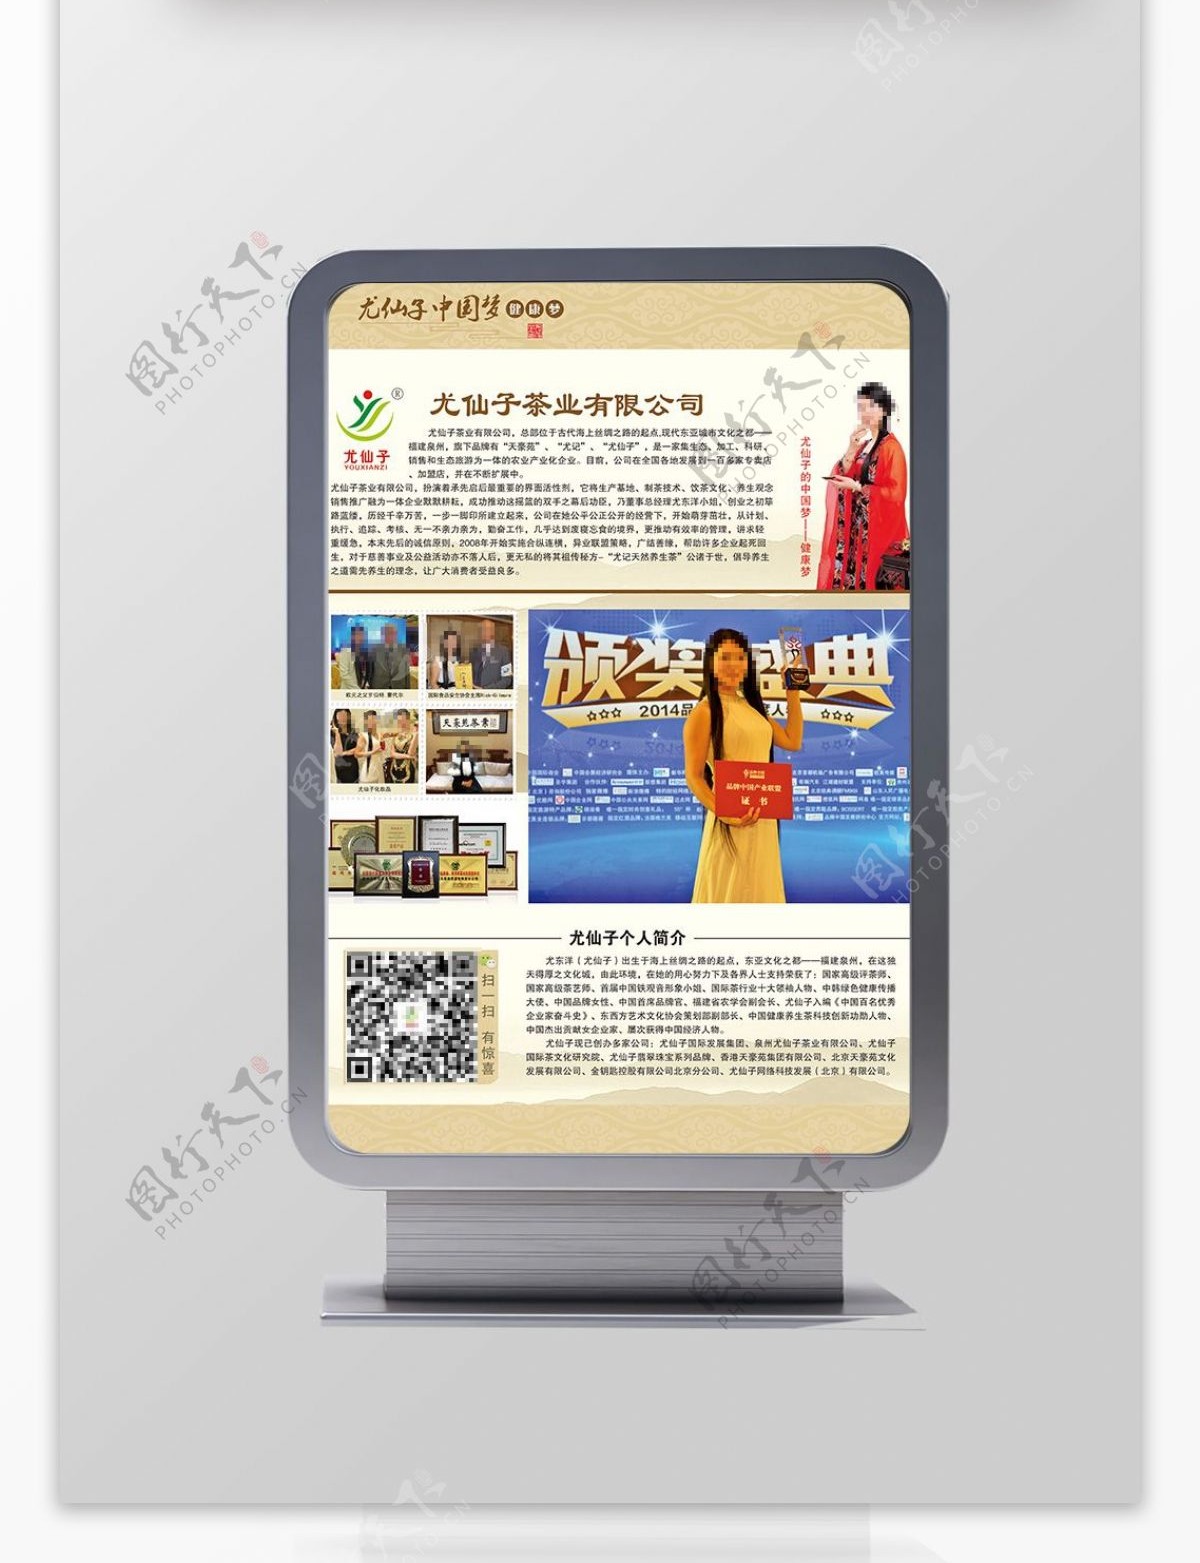 企业书刊杂志印刷海报尤仙子中国梦健康梦